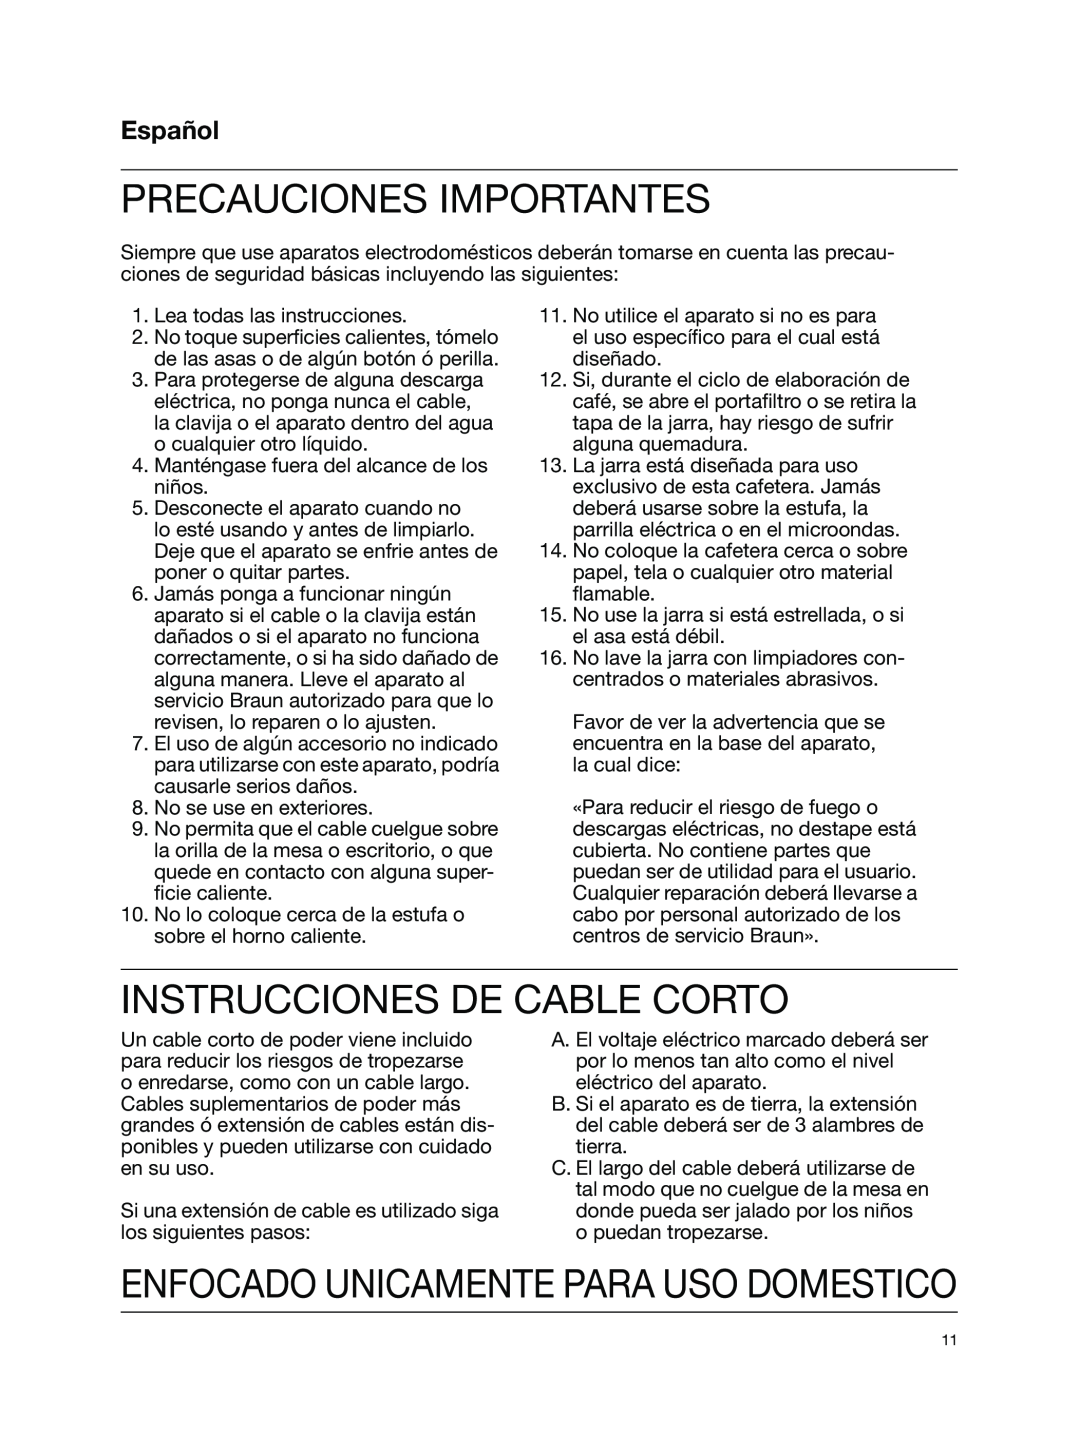 Braun KF550, KF510 Precauciones Importantes, Instrucciones De Cable Corto, Español, Enfocado Unicamente Para Uso Domestico 